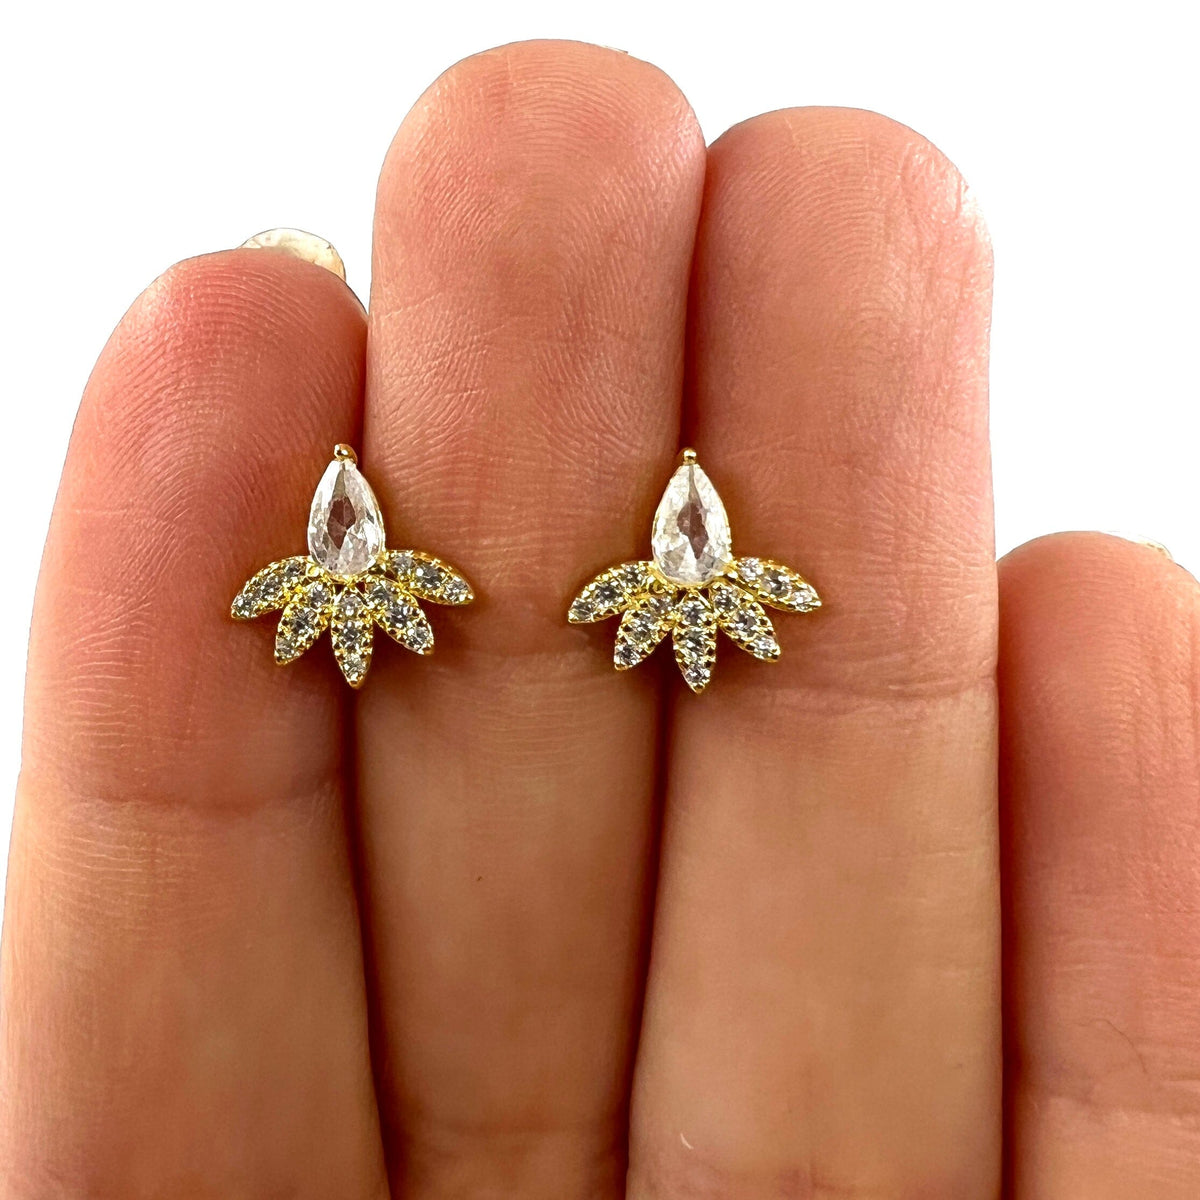 Flower Stud Earrings Jewelry Felix Z 